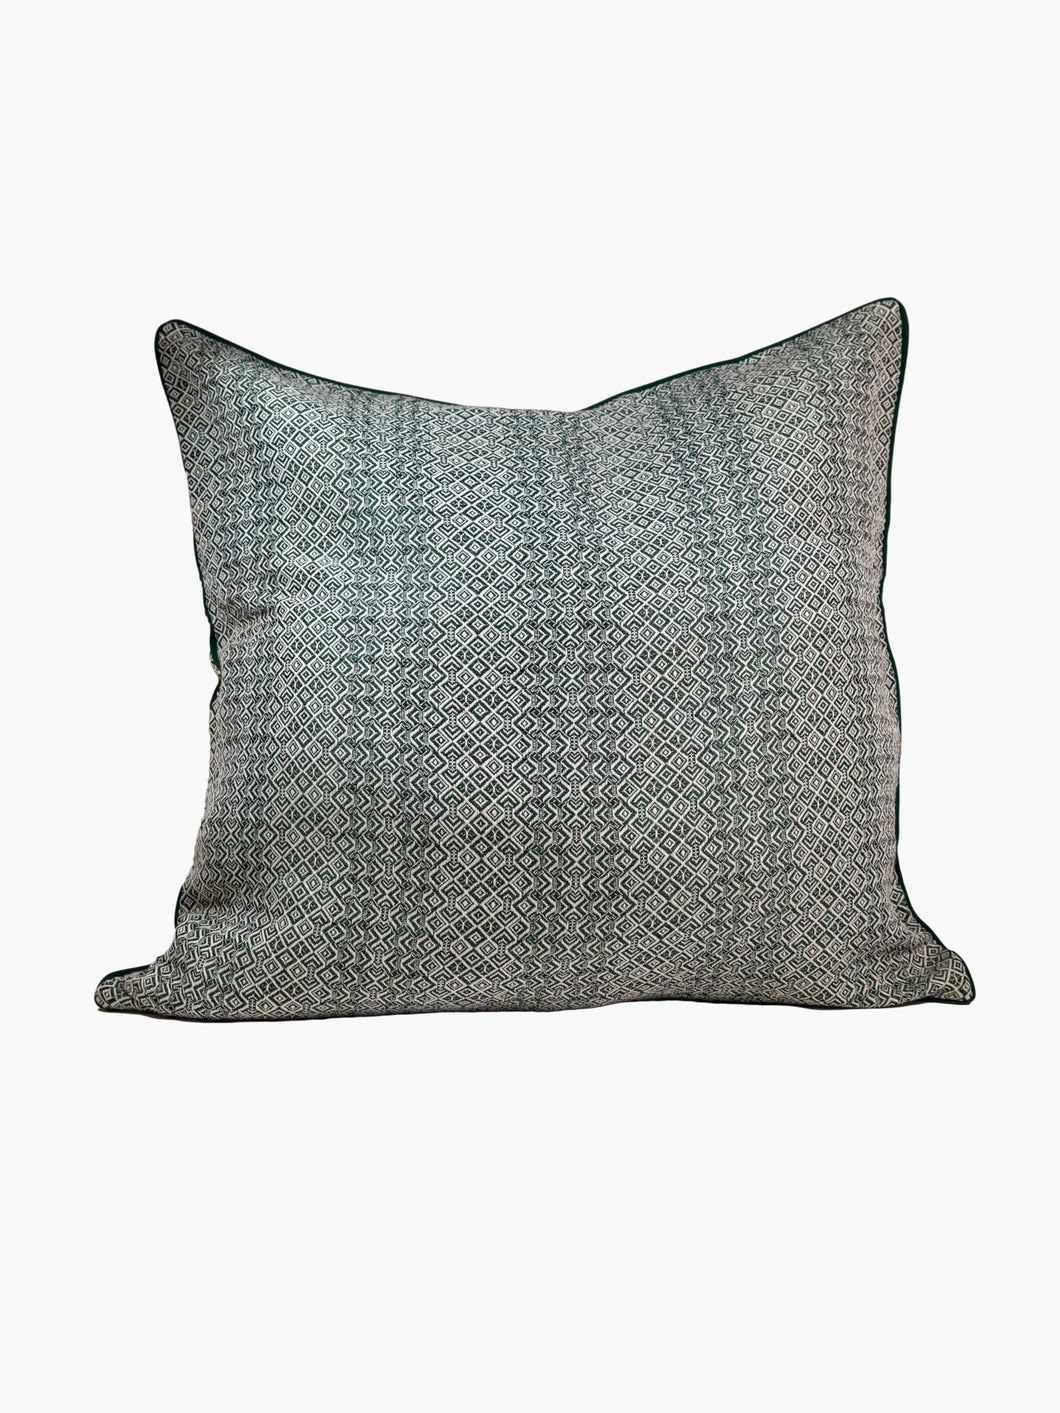 Square Intreccio Cushion Cover in Cipresso Green